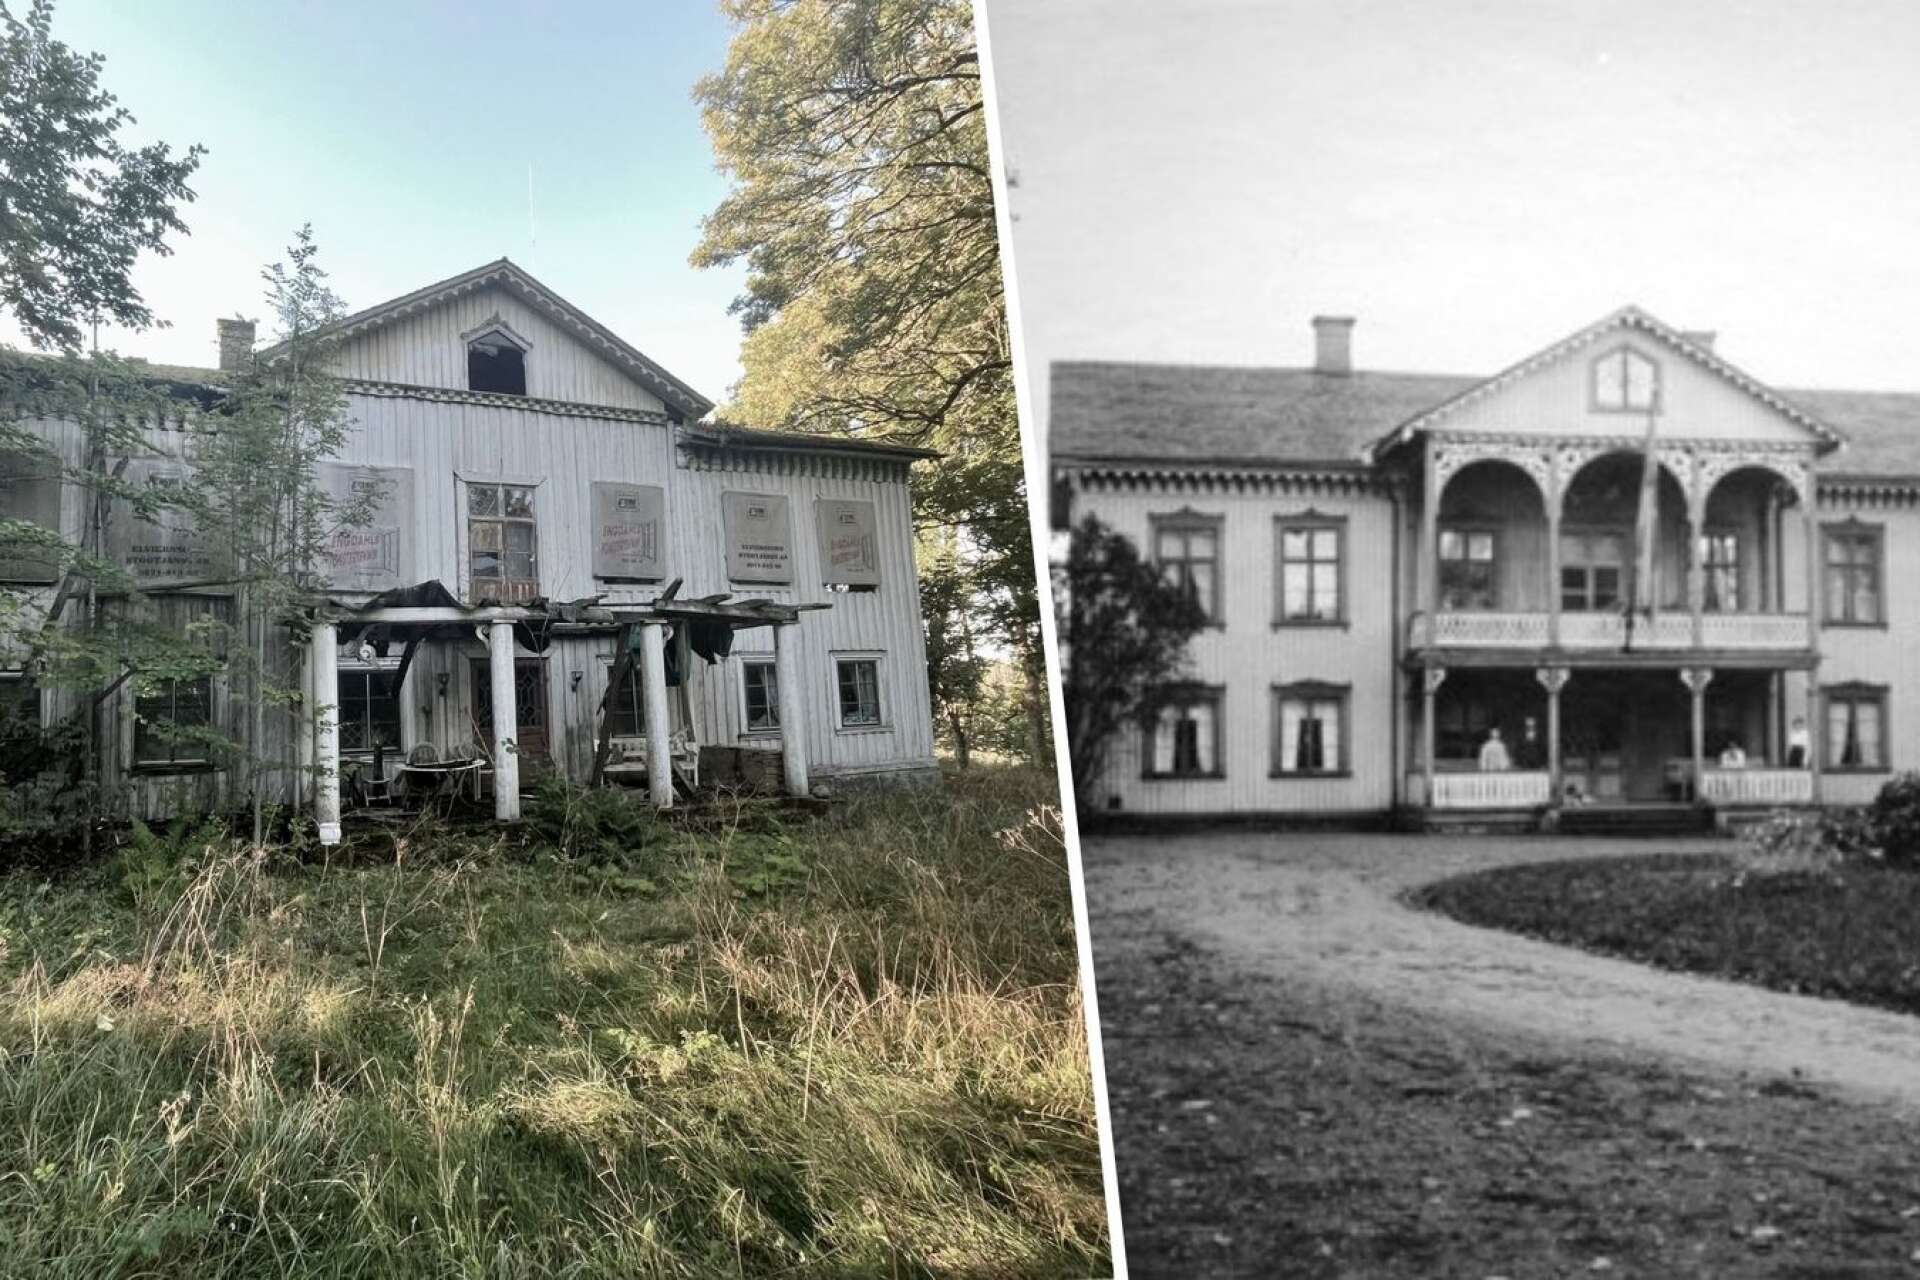 Huvudbyggnaden på gården som den ser ut idag i jämförelse med hur den såg ut i början av 1900-talet.